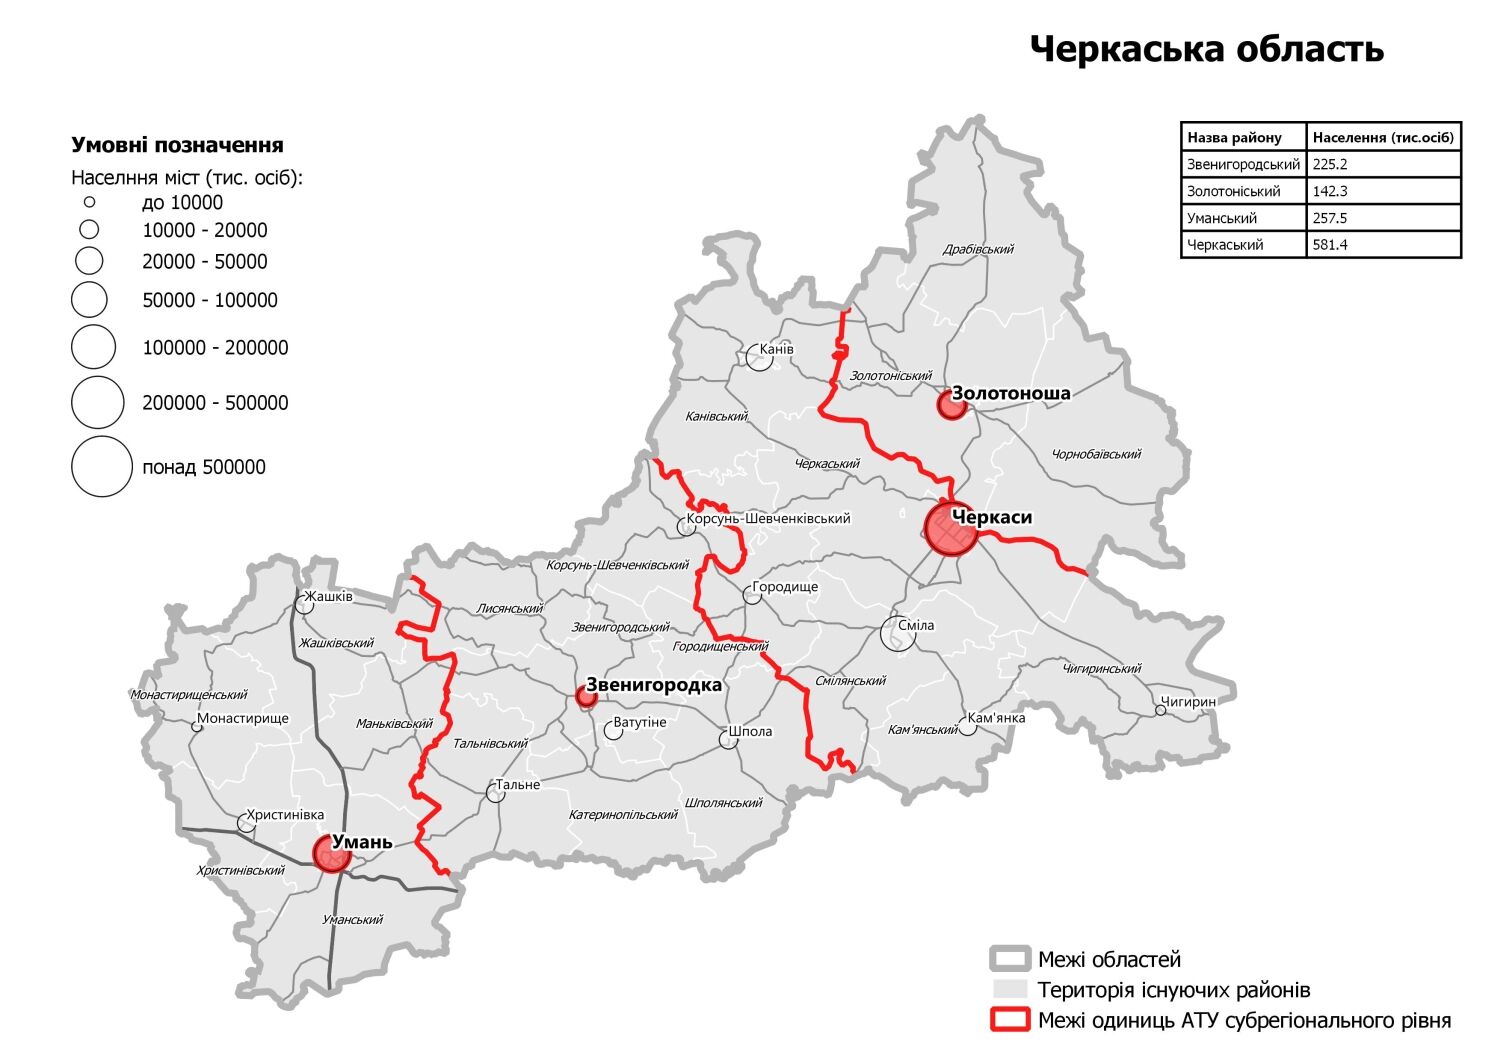 Кабмин утвердил новую карту районов в Украине: что изменится